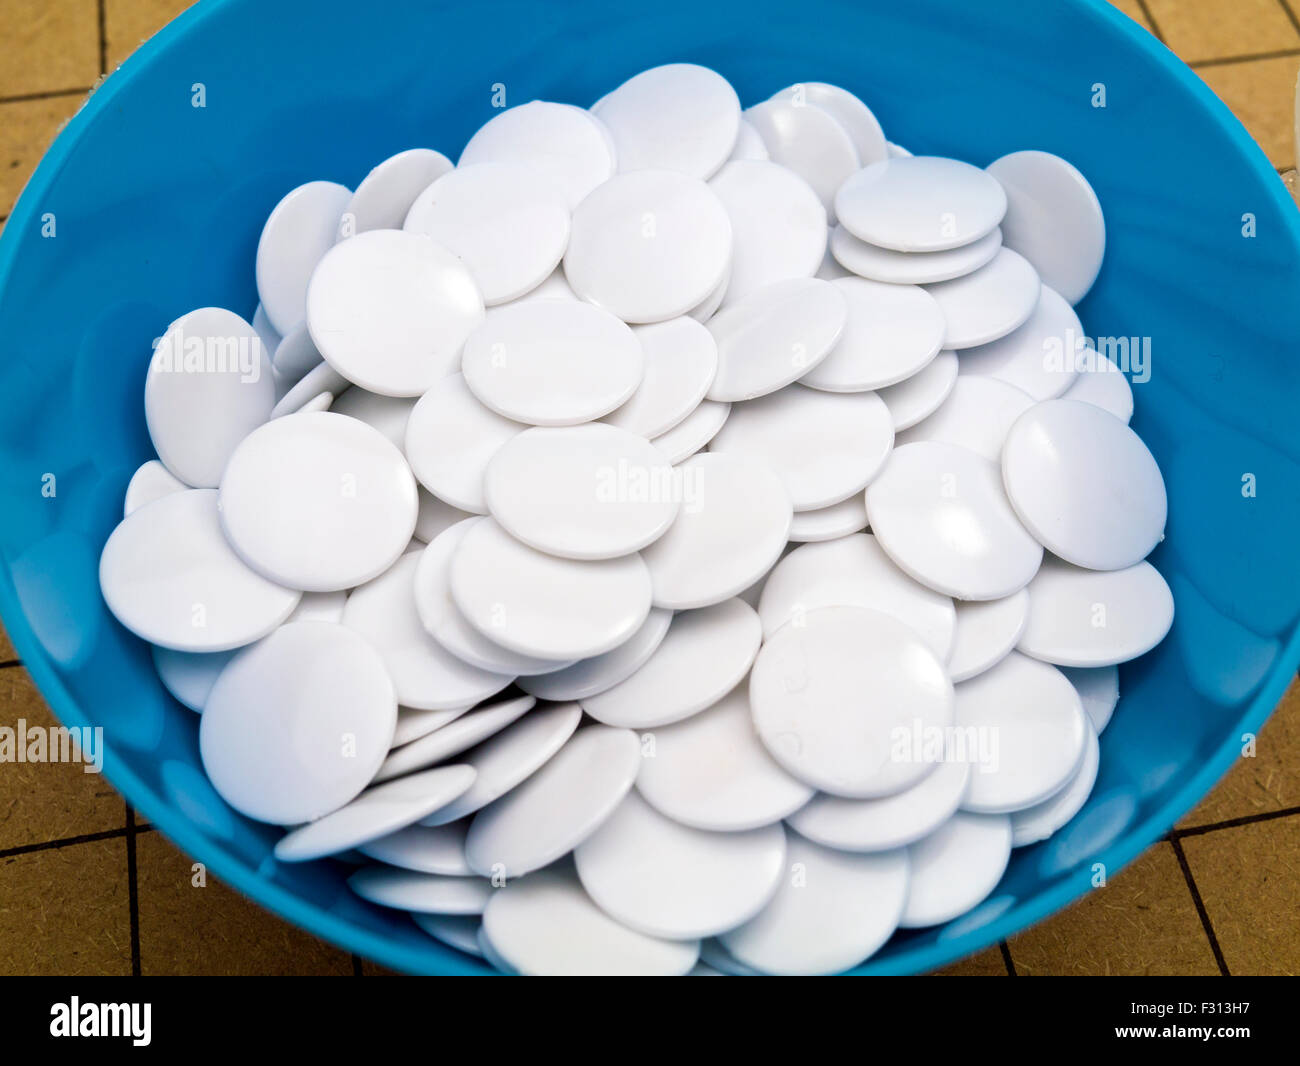 White stones for Japanese board game, IGO Stock Photo